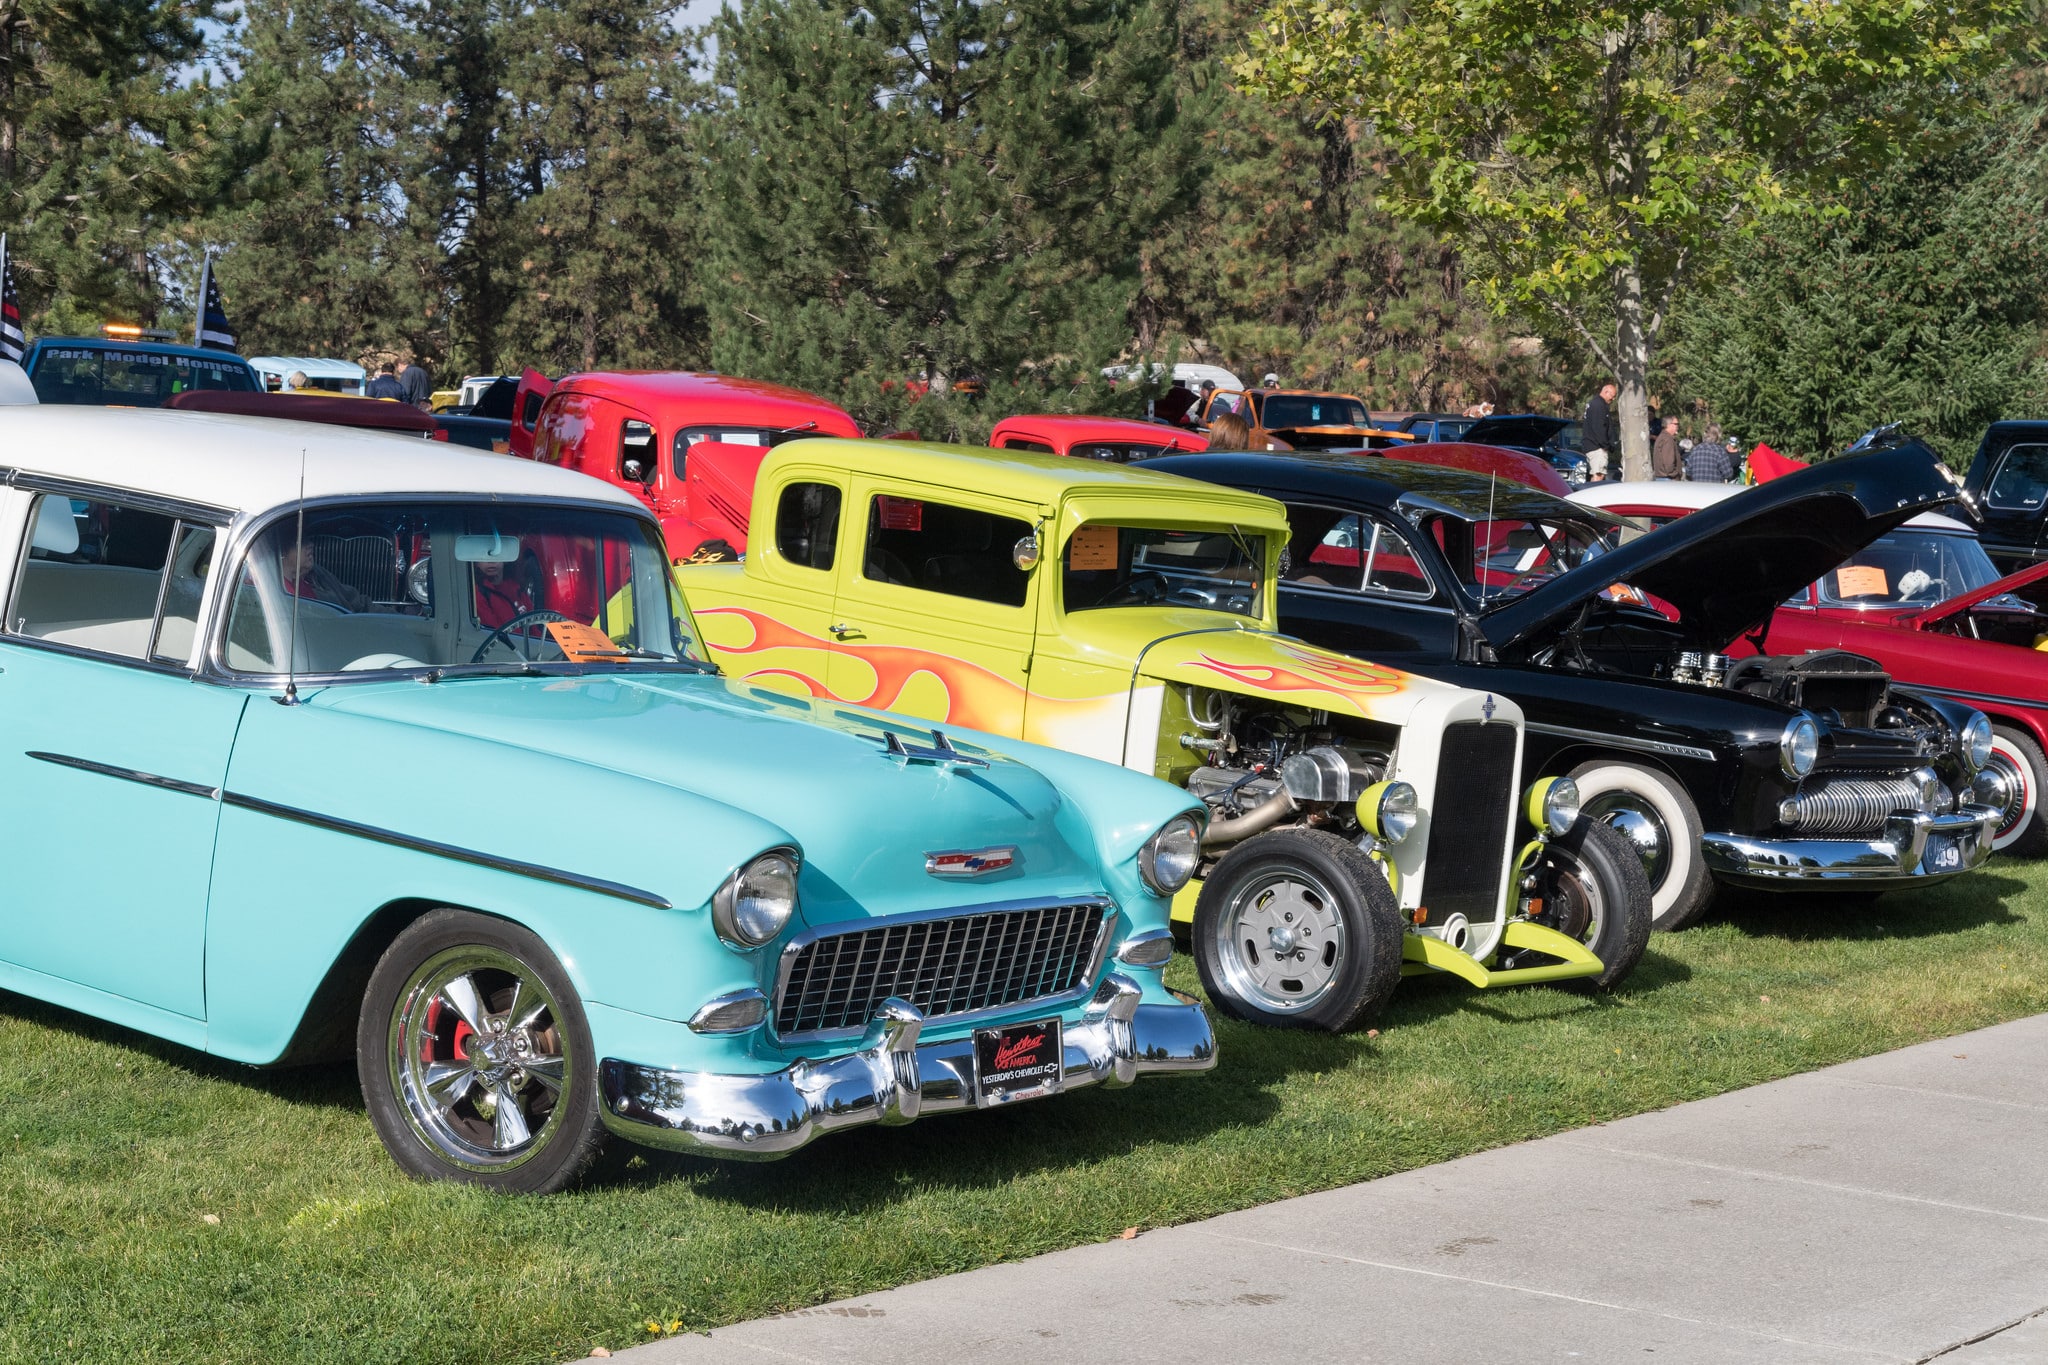 Valleyfest Car Show - Spokane Valley